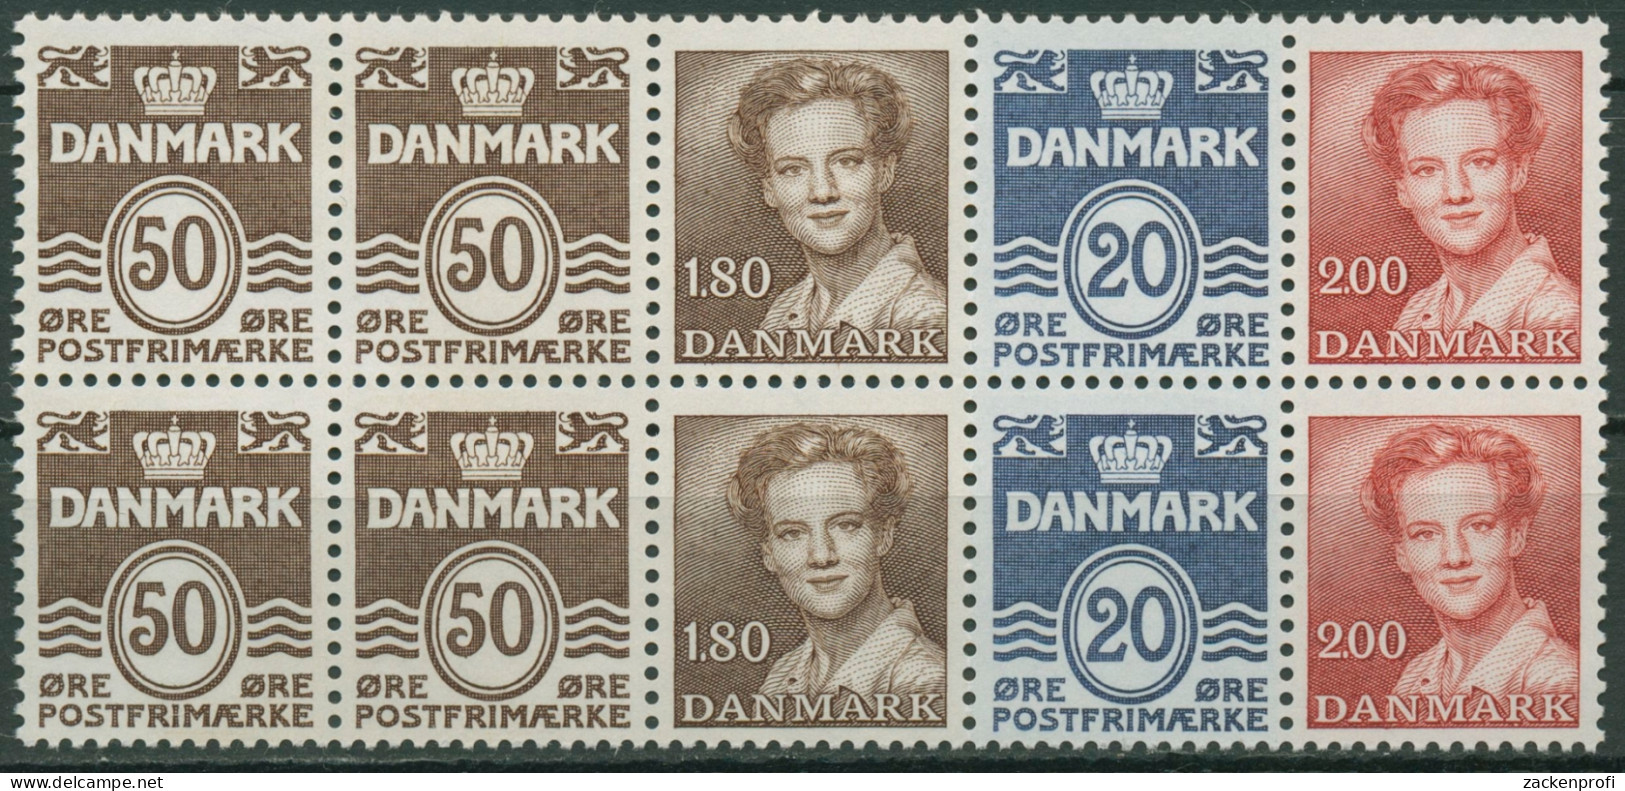 Dänemark 1974 Markenheftchenblatt H-Bl. 19 Postfrisch (C96552) - Postzegelboekjes